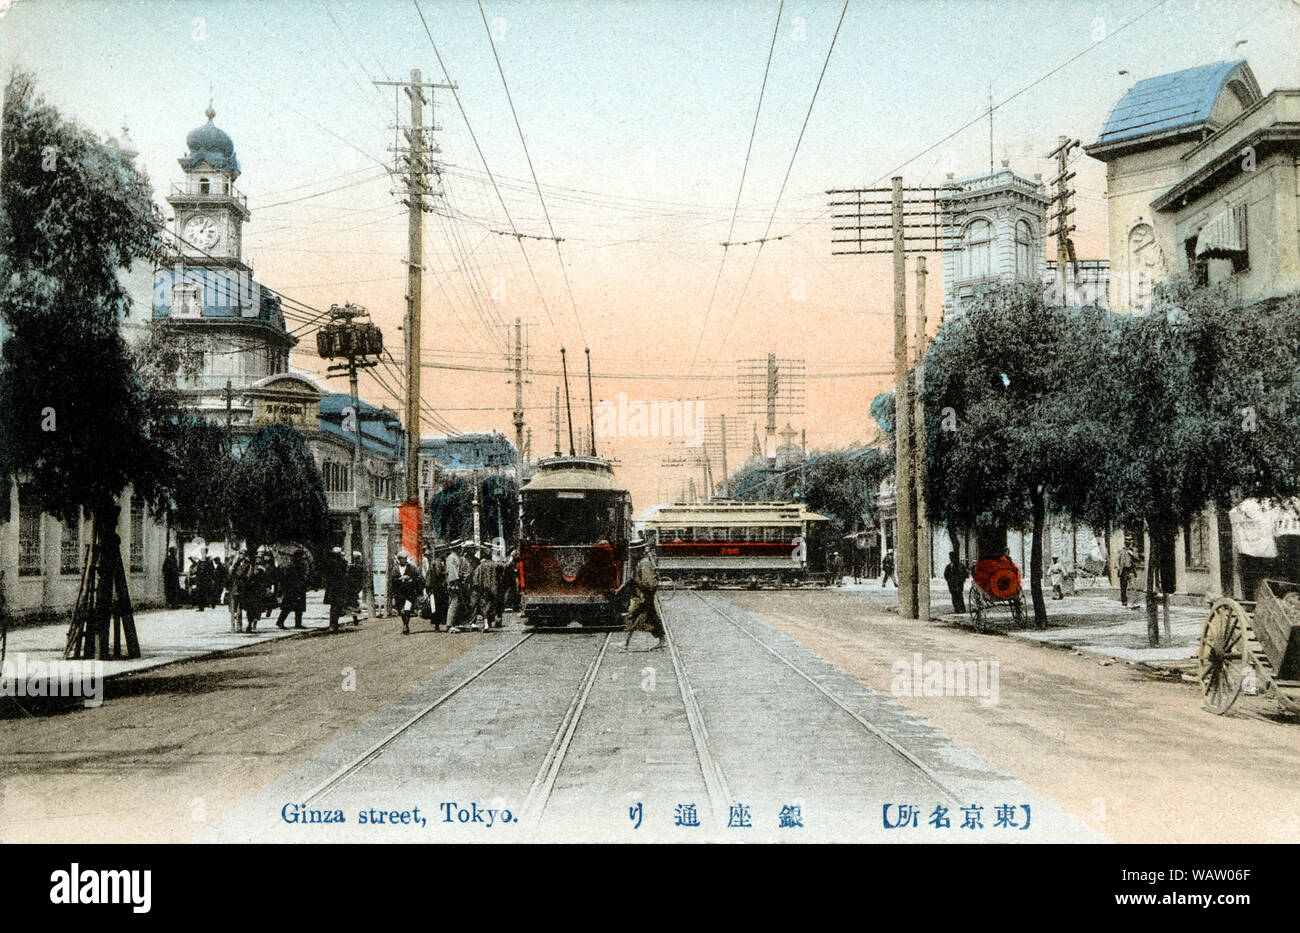 [ 1910s Japón - Tranvías en Ginza, Tokio ] - dos tranvías pasan por el edificio Hattori en Tokio la moda Ginza. Los carros están estacionados bajo los frondosos árboles de sauce. El edificio Hattori es uno de los principales puntos de referencia de Ginza. Era el hogar de K. Hattori & Co., una tienda de relojes y joyas abrió en 1881 (Meiji 14) por Kintaro Hattori (1860-1934). Esta foto fue baleado en algún momento entre 1911 y 1913. Vintage del siglo xx postal. Foto de stock